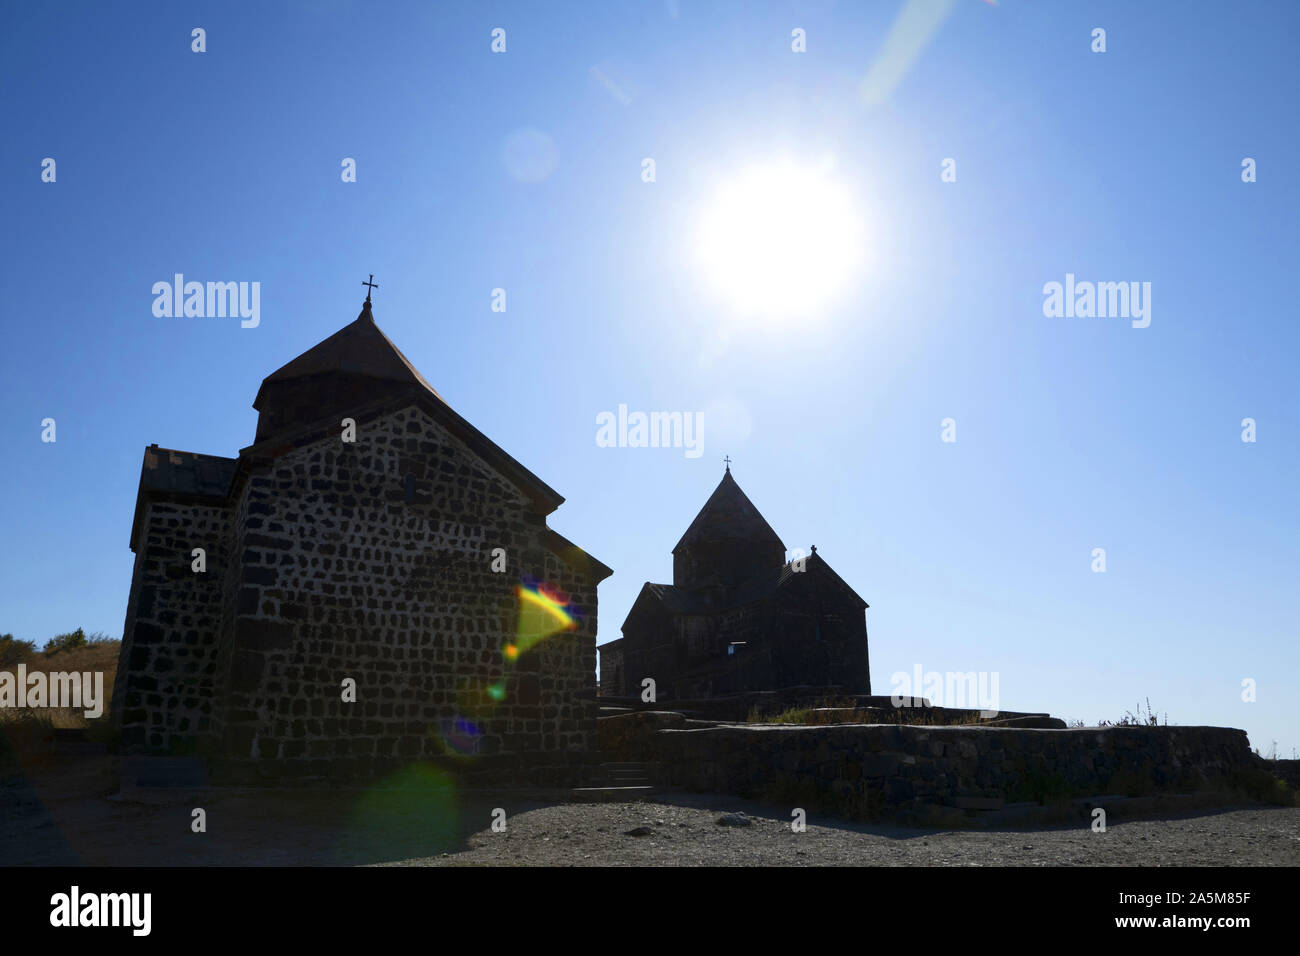 Armenia: Sevanavank monastery - silhouette Stock Photo